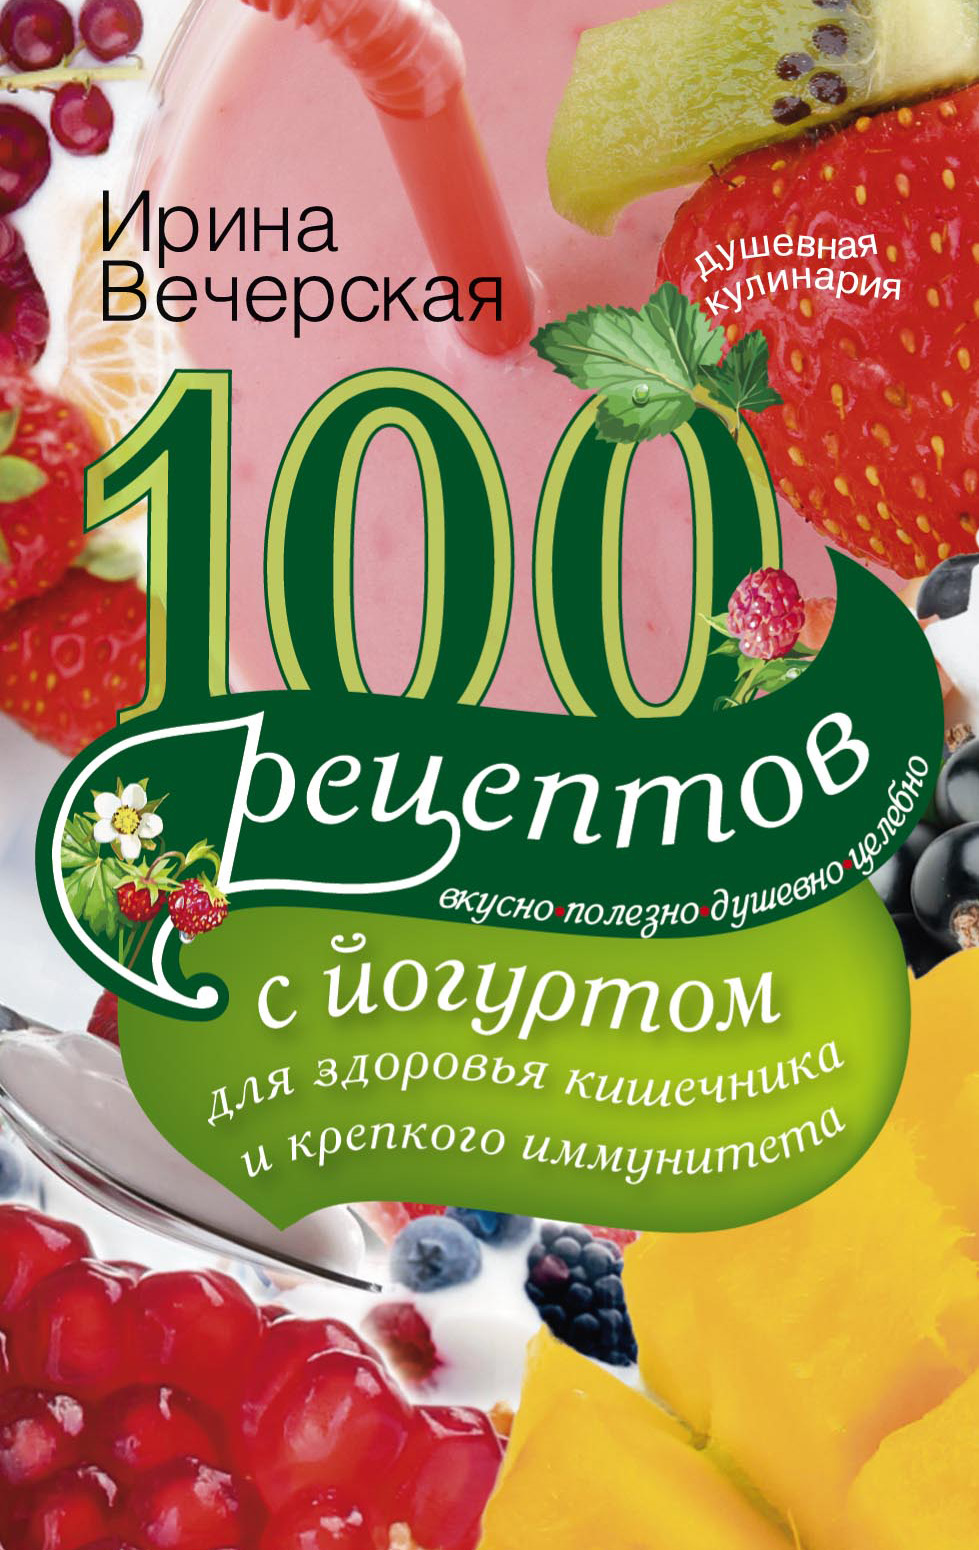 100рецептов с йогуртом для здоровья кишечника и крепкого иммунитета. Вкусно, полезно, душевно, целебно